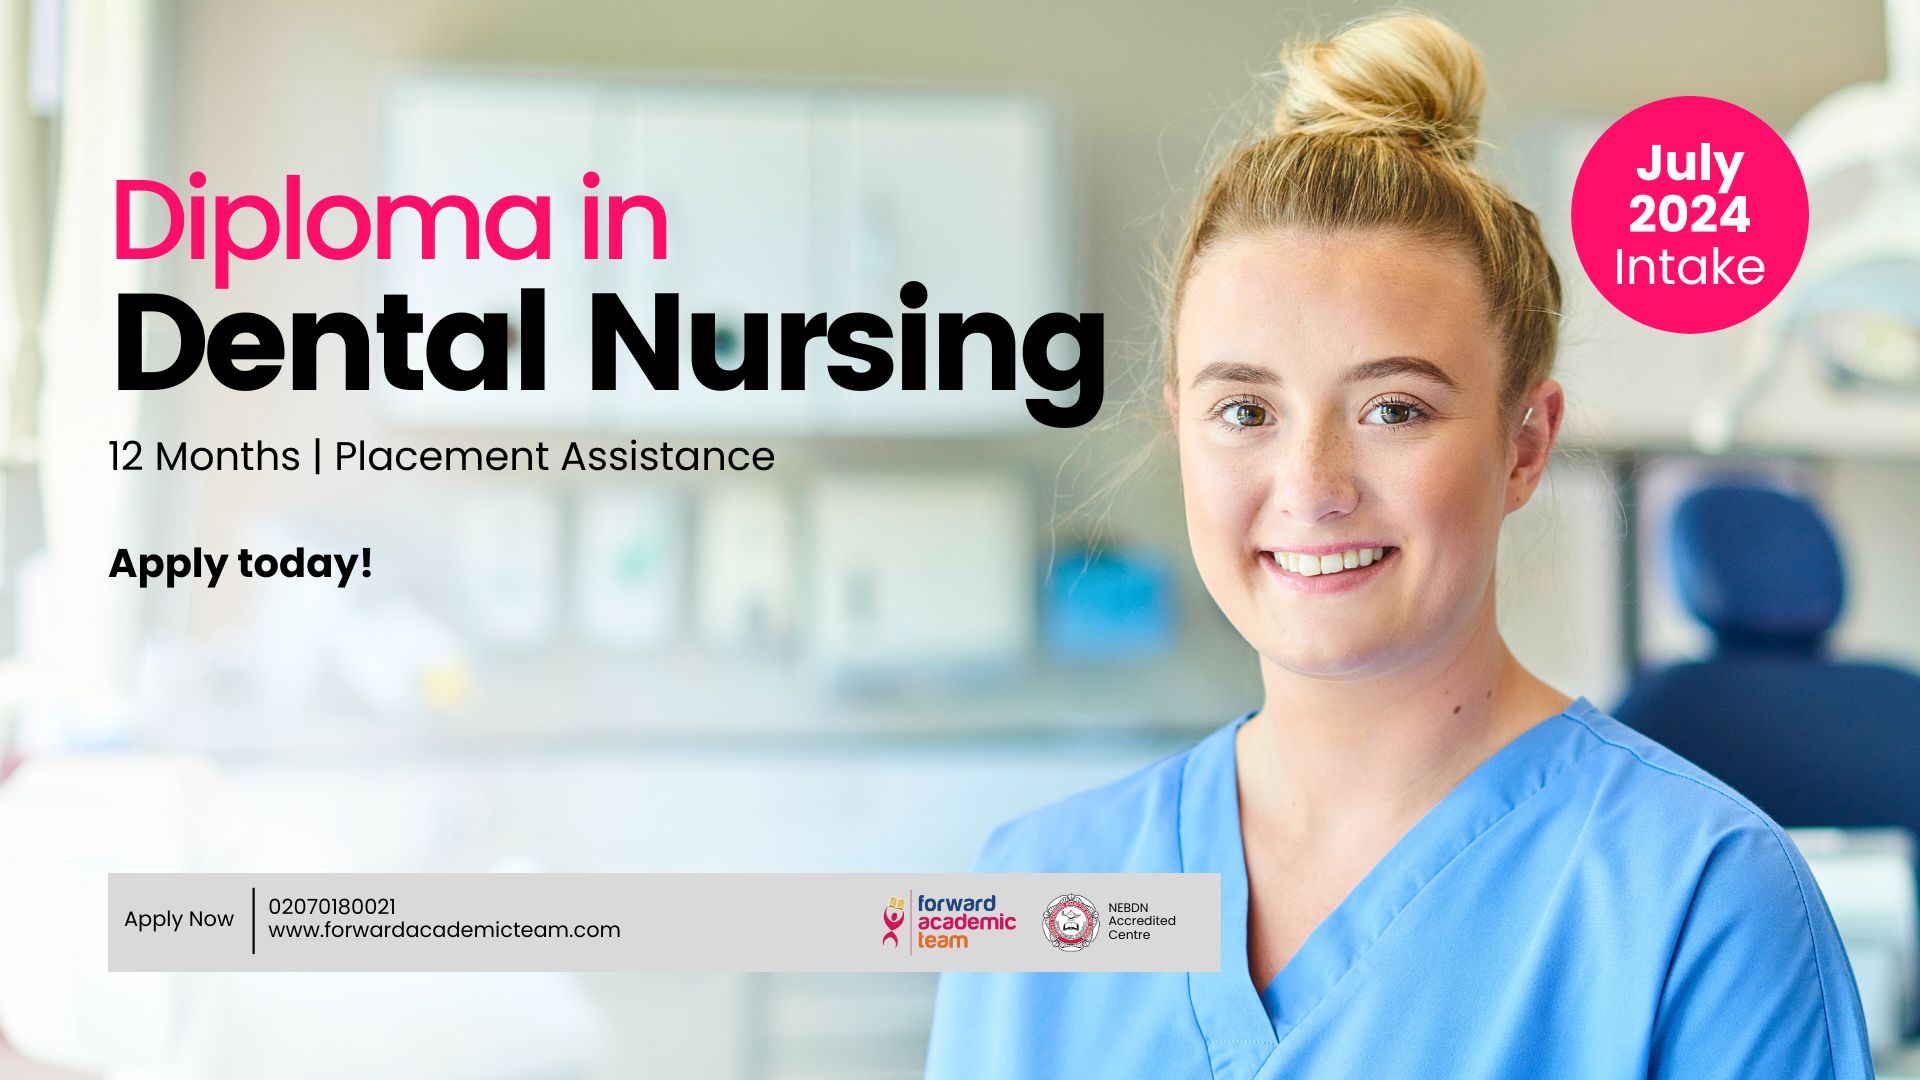 July 2024 Intake of Nationala Diploma in Dental Nursing